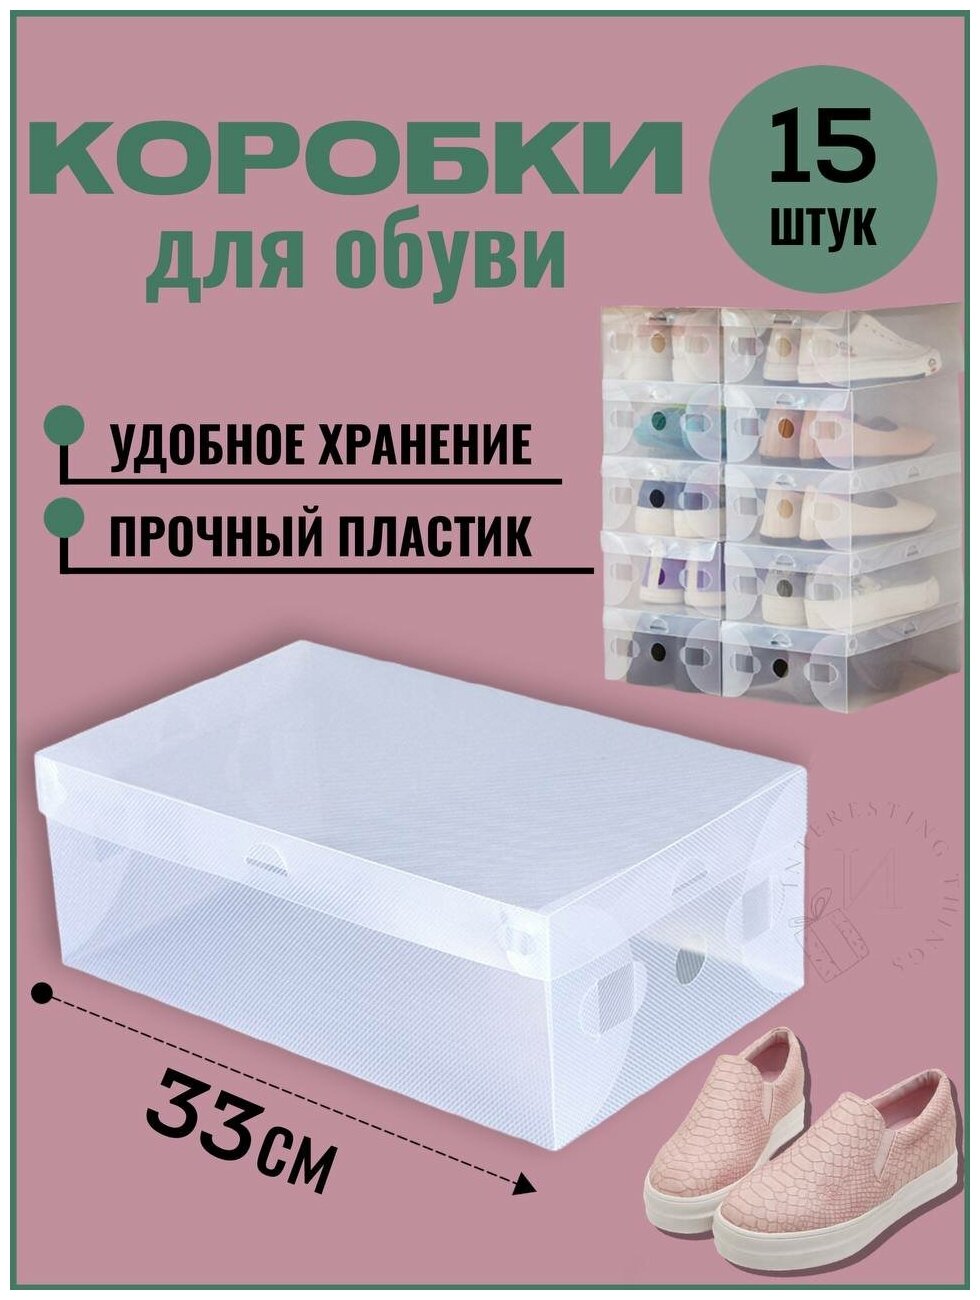 Коробки для хранения обуви пластиковые, набор пластиковых прозрачных коробок для обуви, органайзеры система хранения, 15 шт, 33х20х12 см